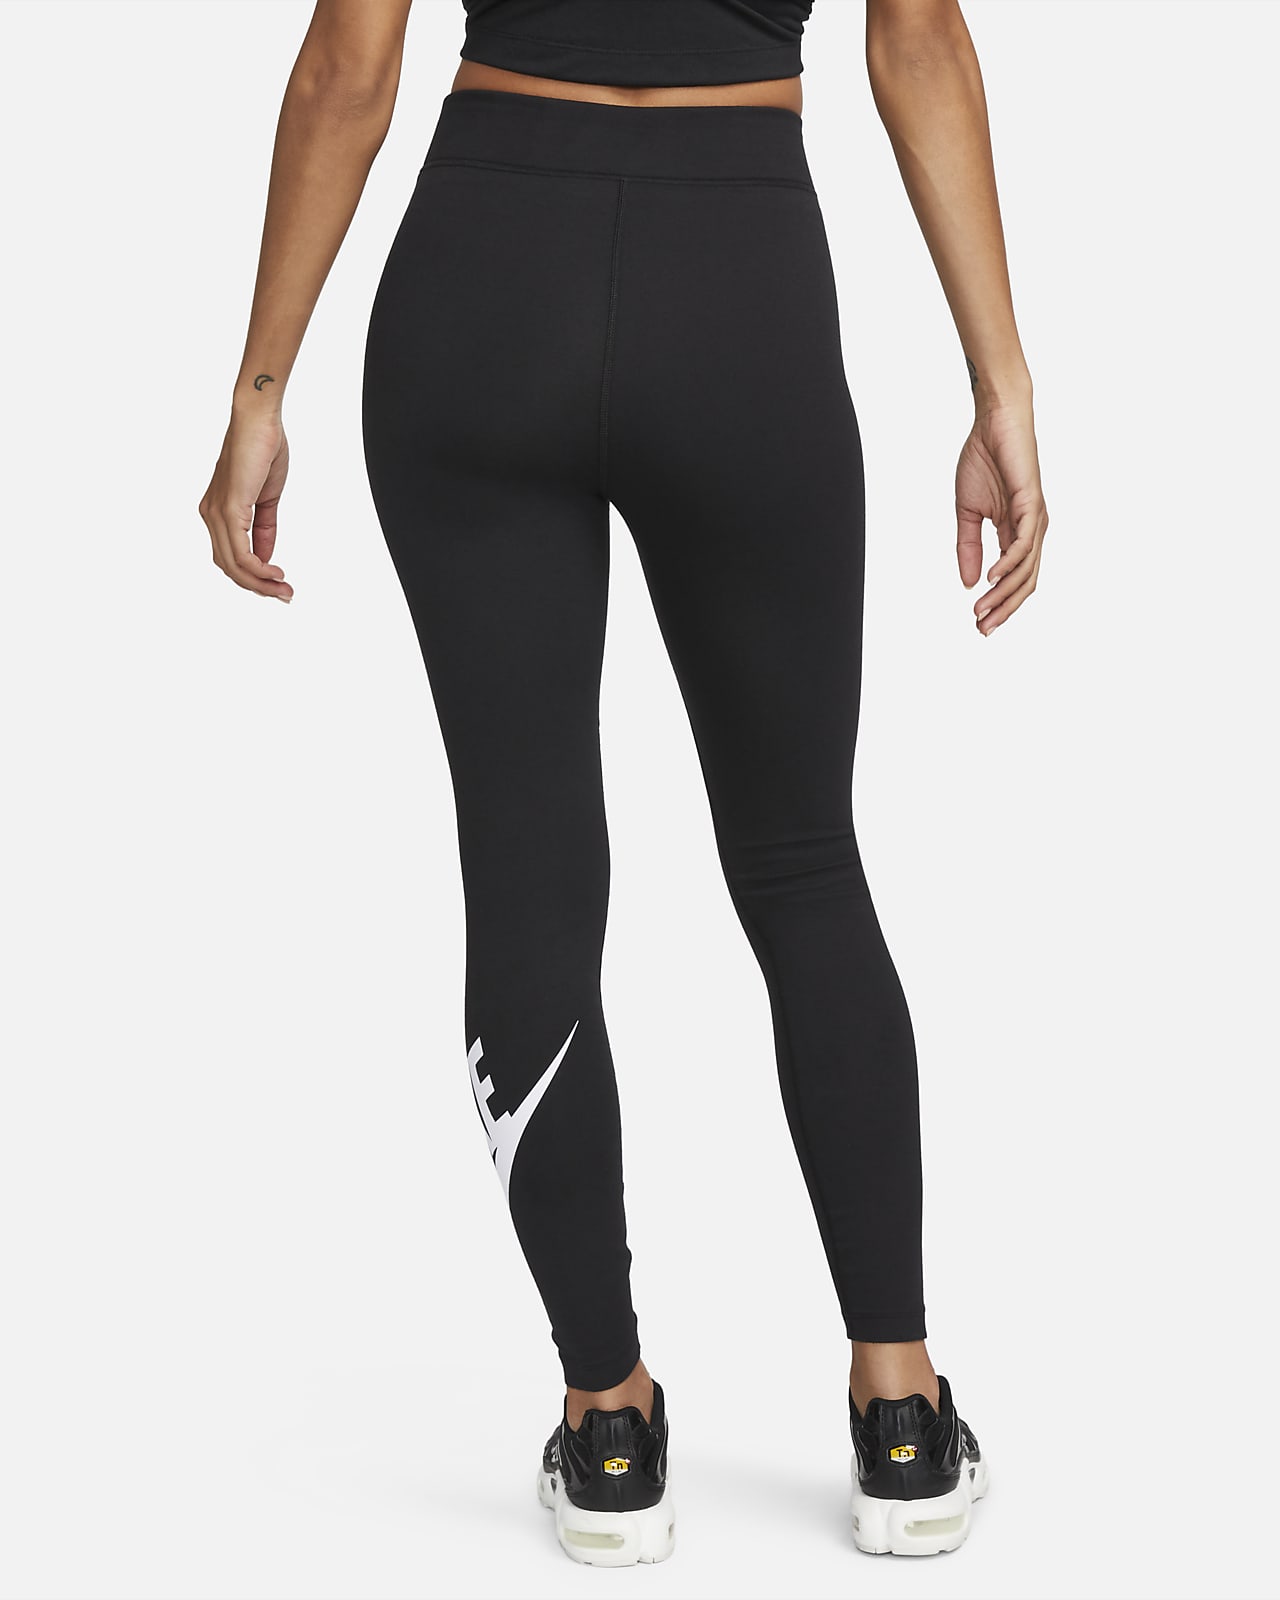 Nike fekete sport leggings  Női ruházat - Sportruházat - Alsó